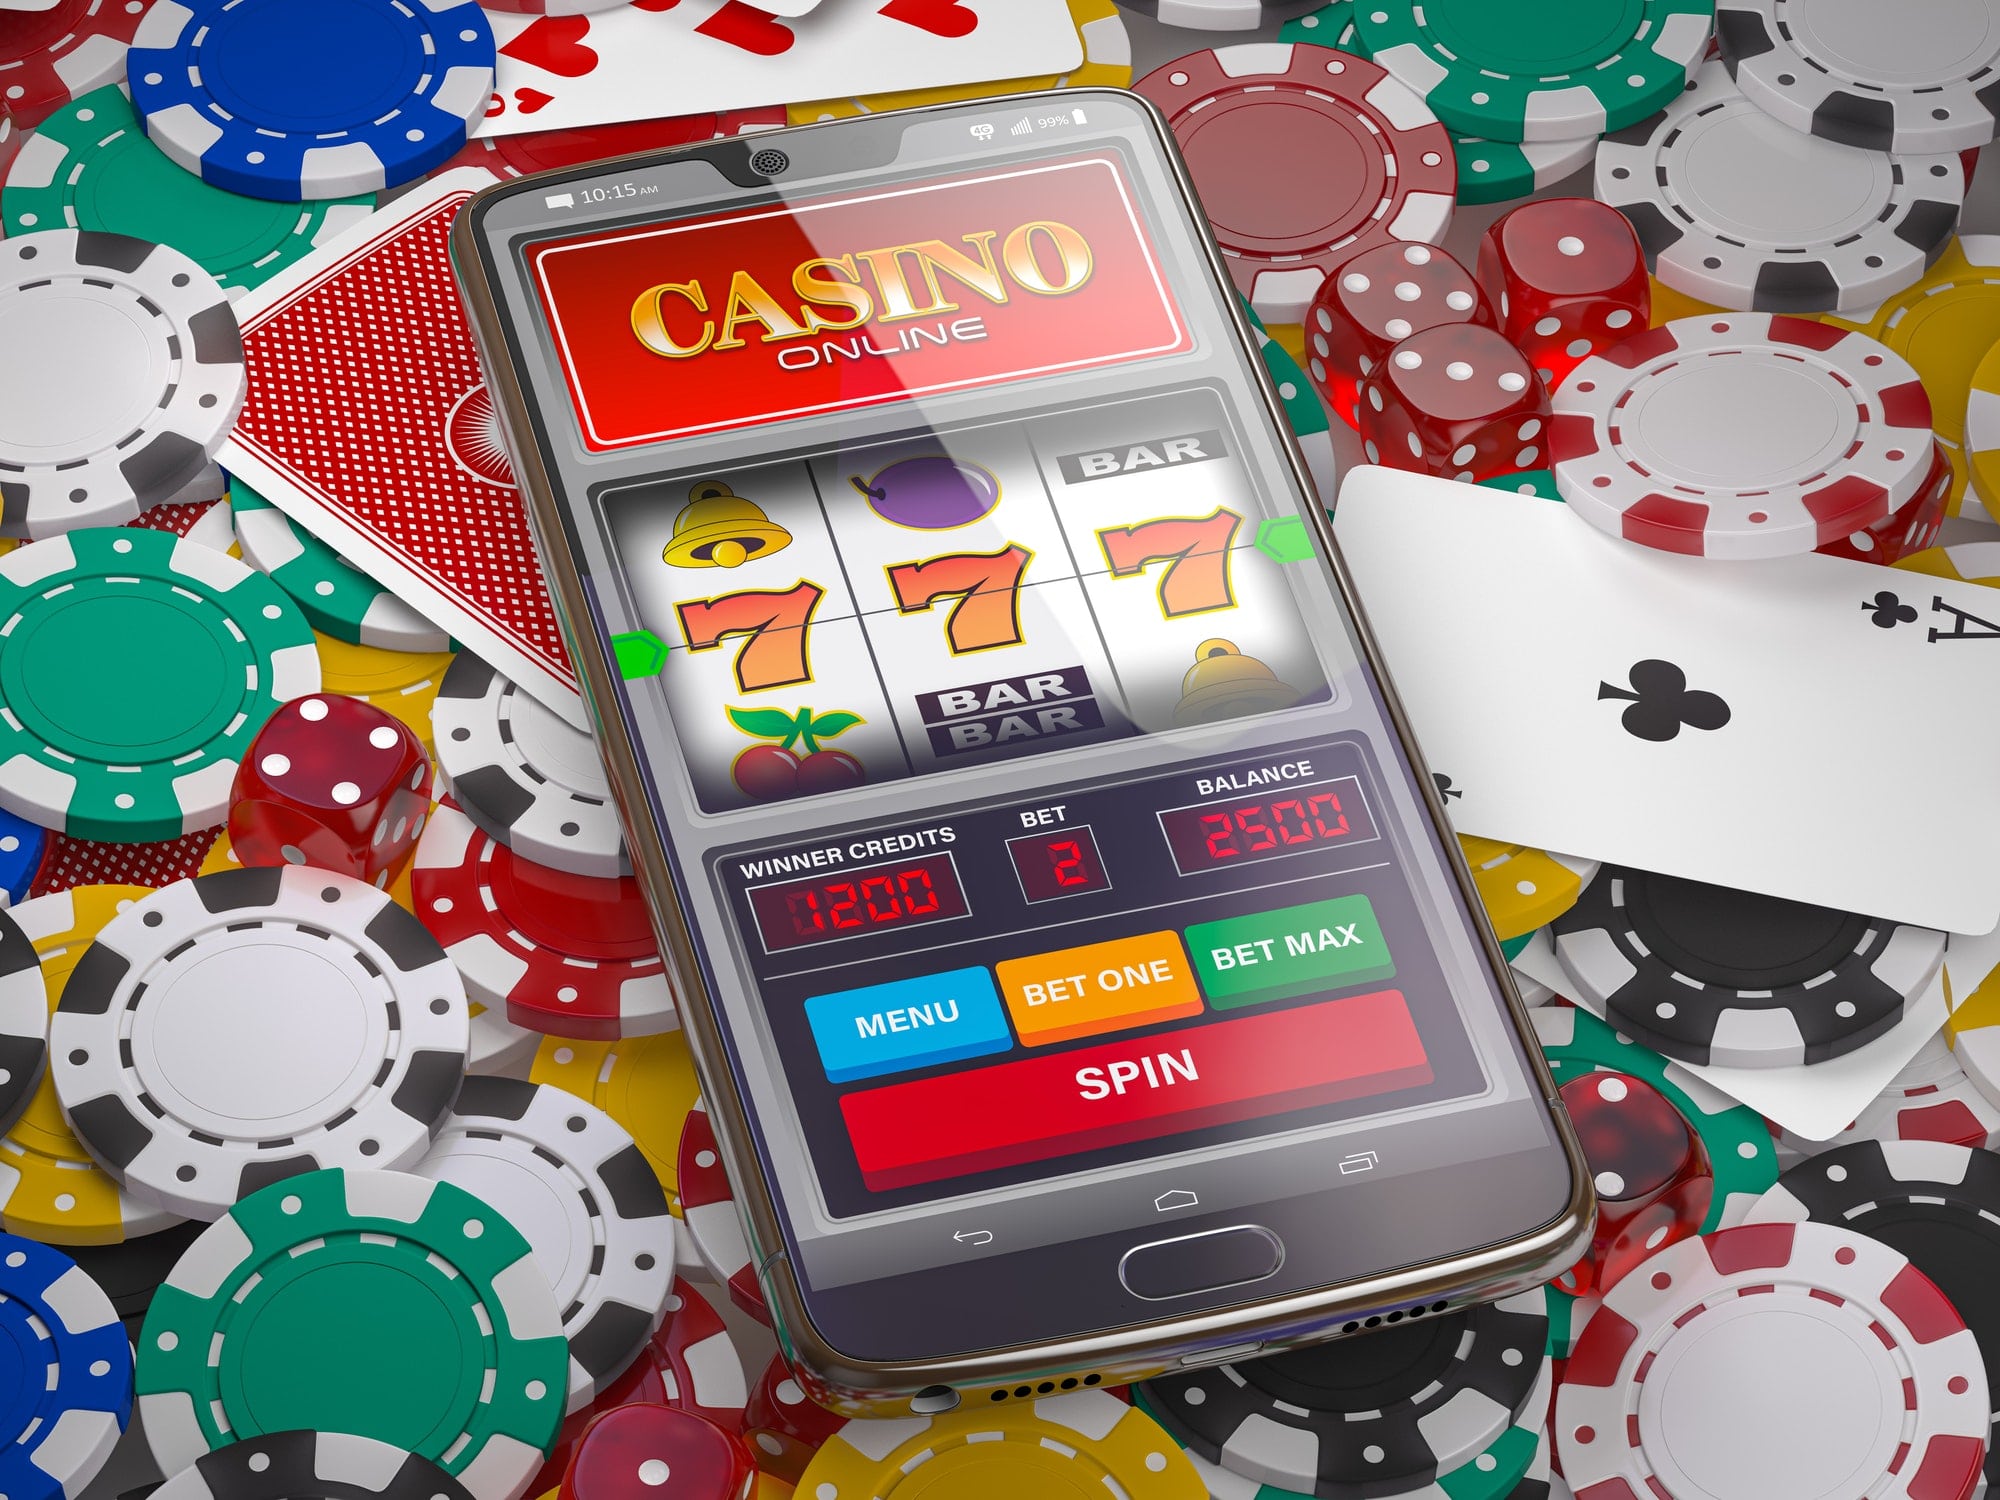 Mobile casino online азино777 официальный сайт скачать бесплатно на андроид мобильная